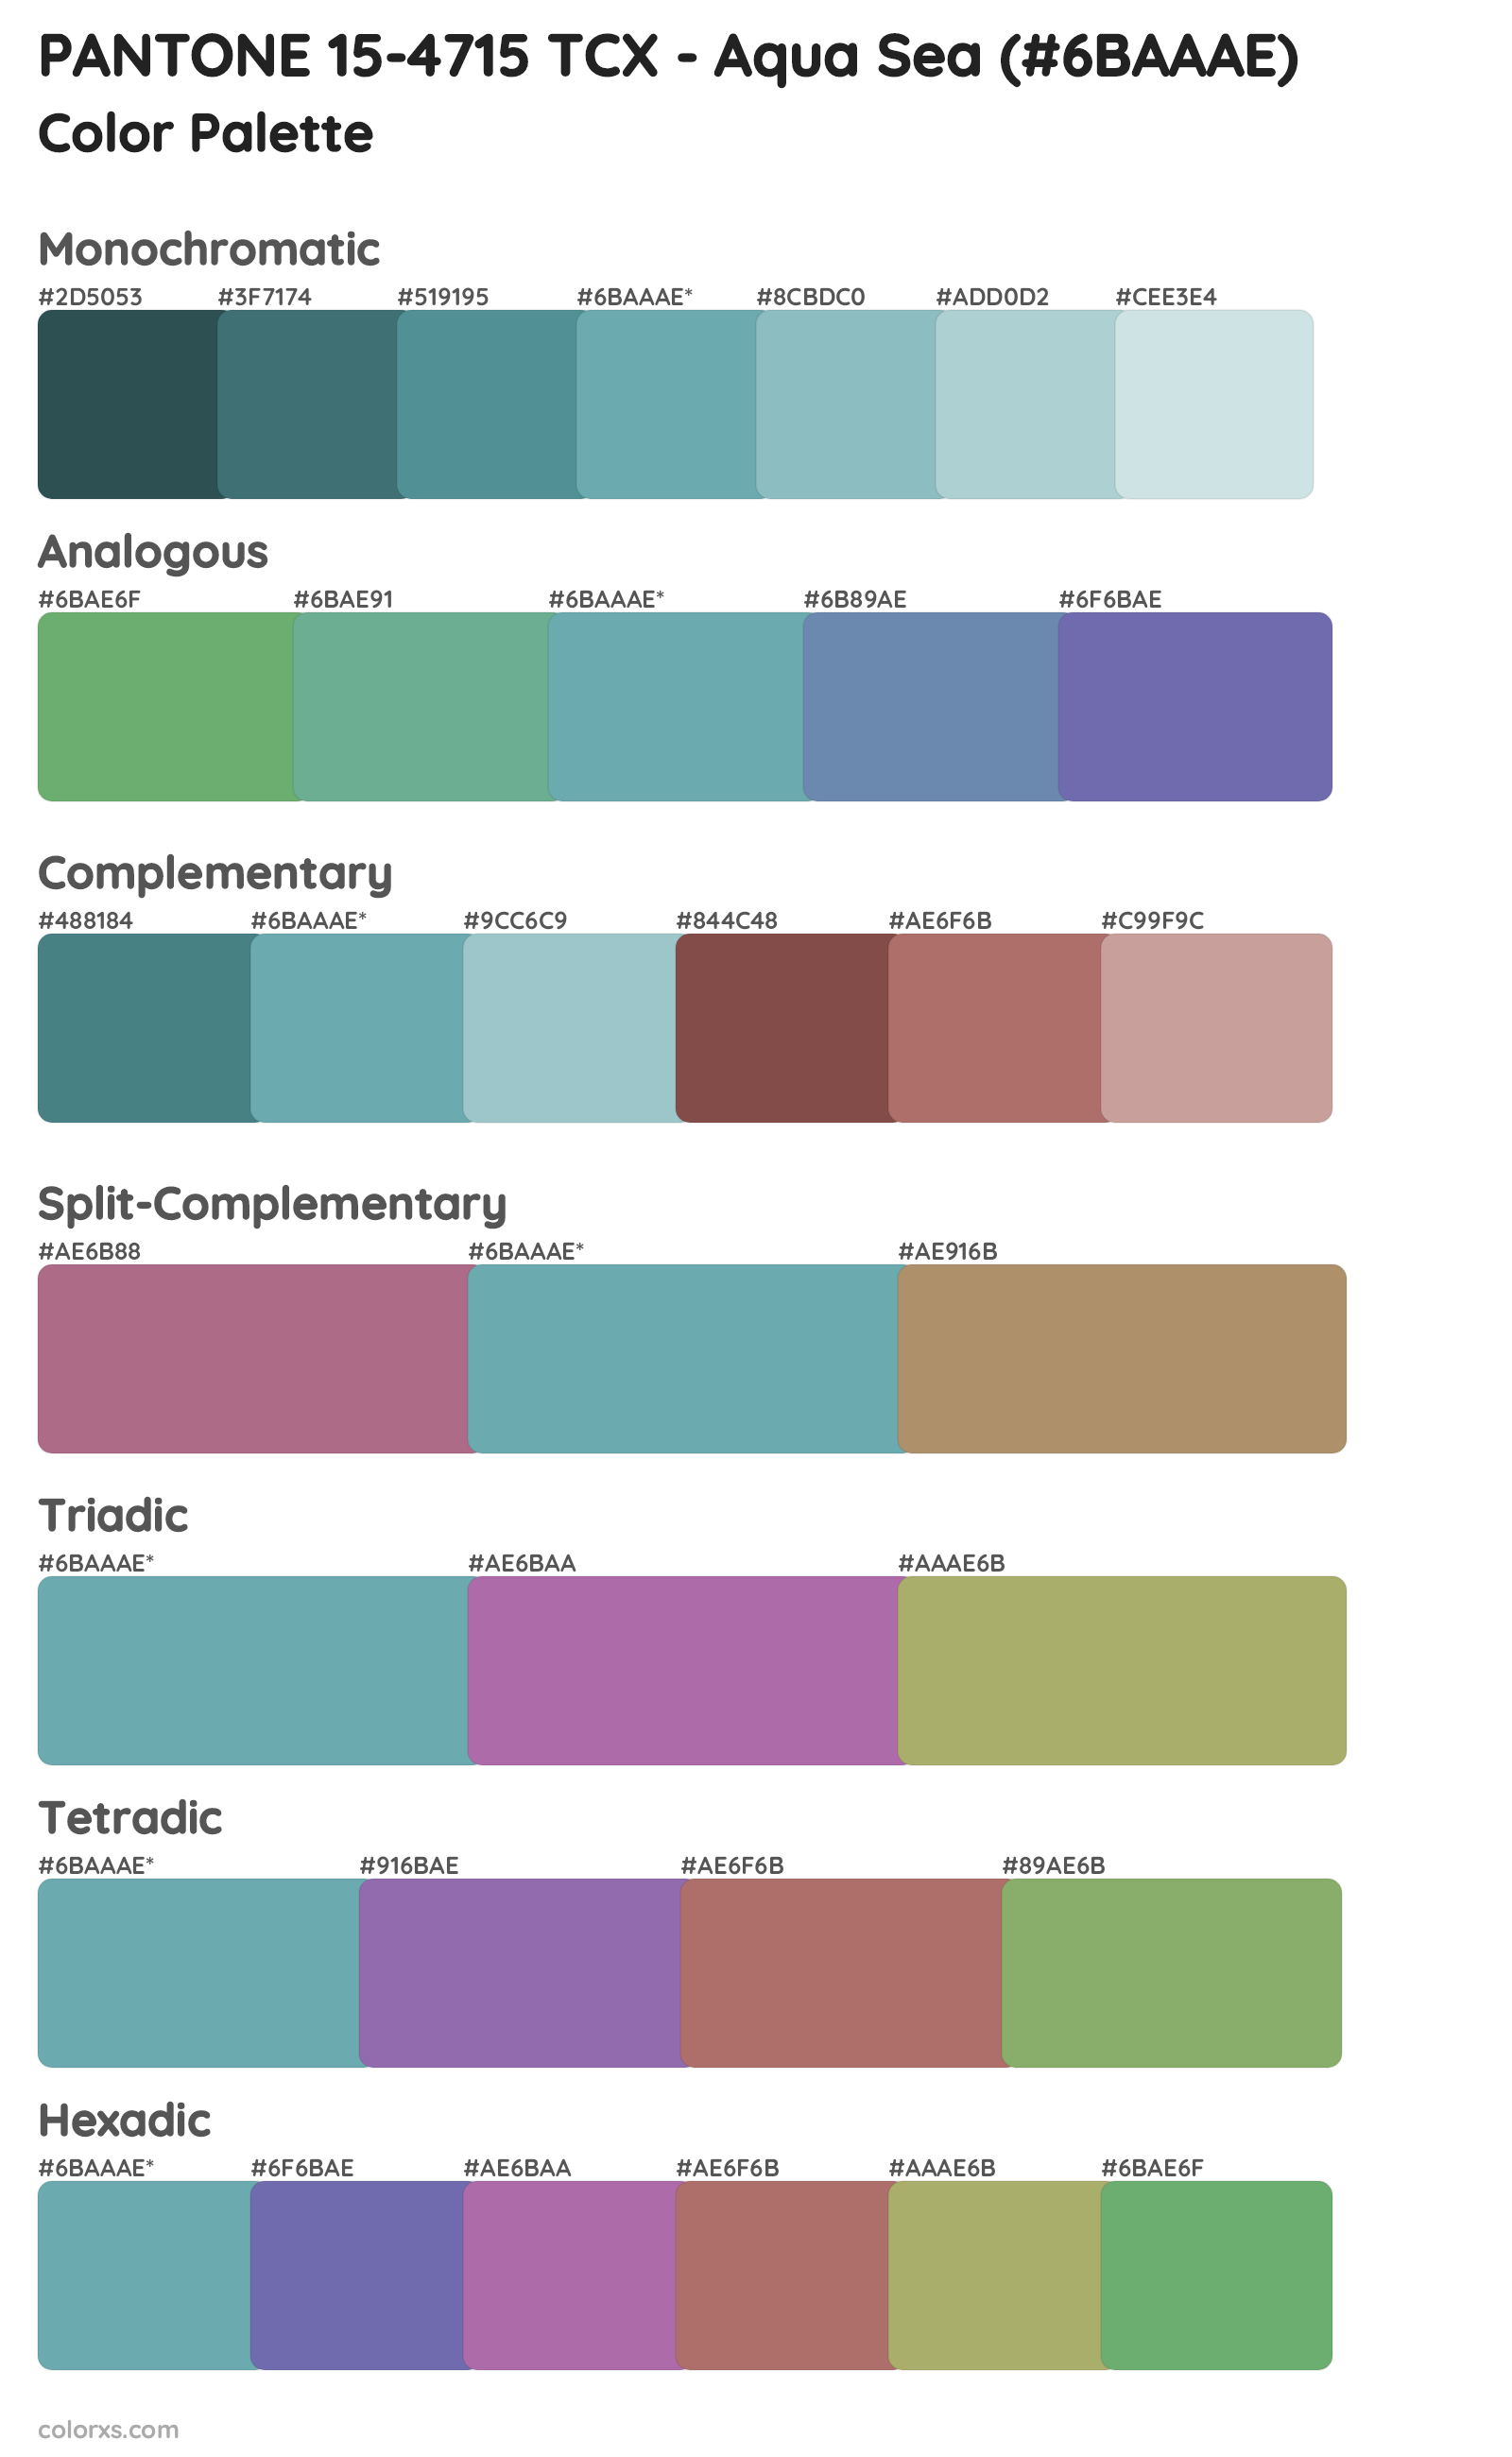 PANTONE 15-4715 TCX - Aqua Sea Color Scheme Palettes